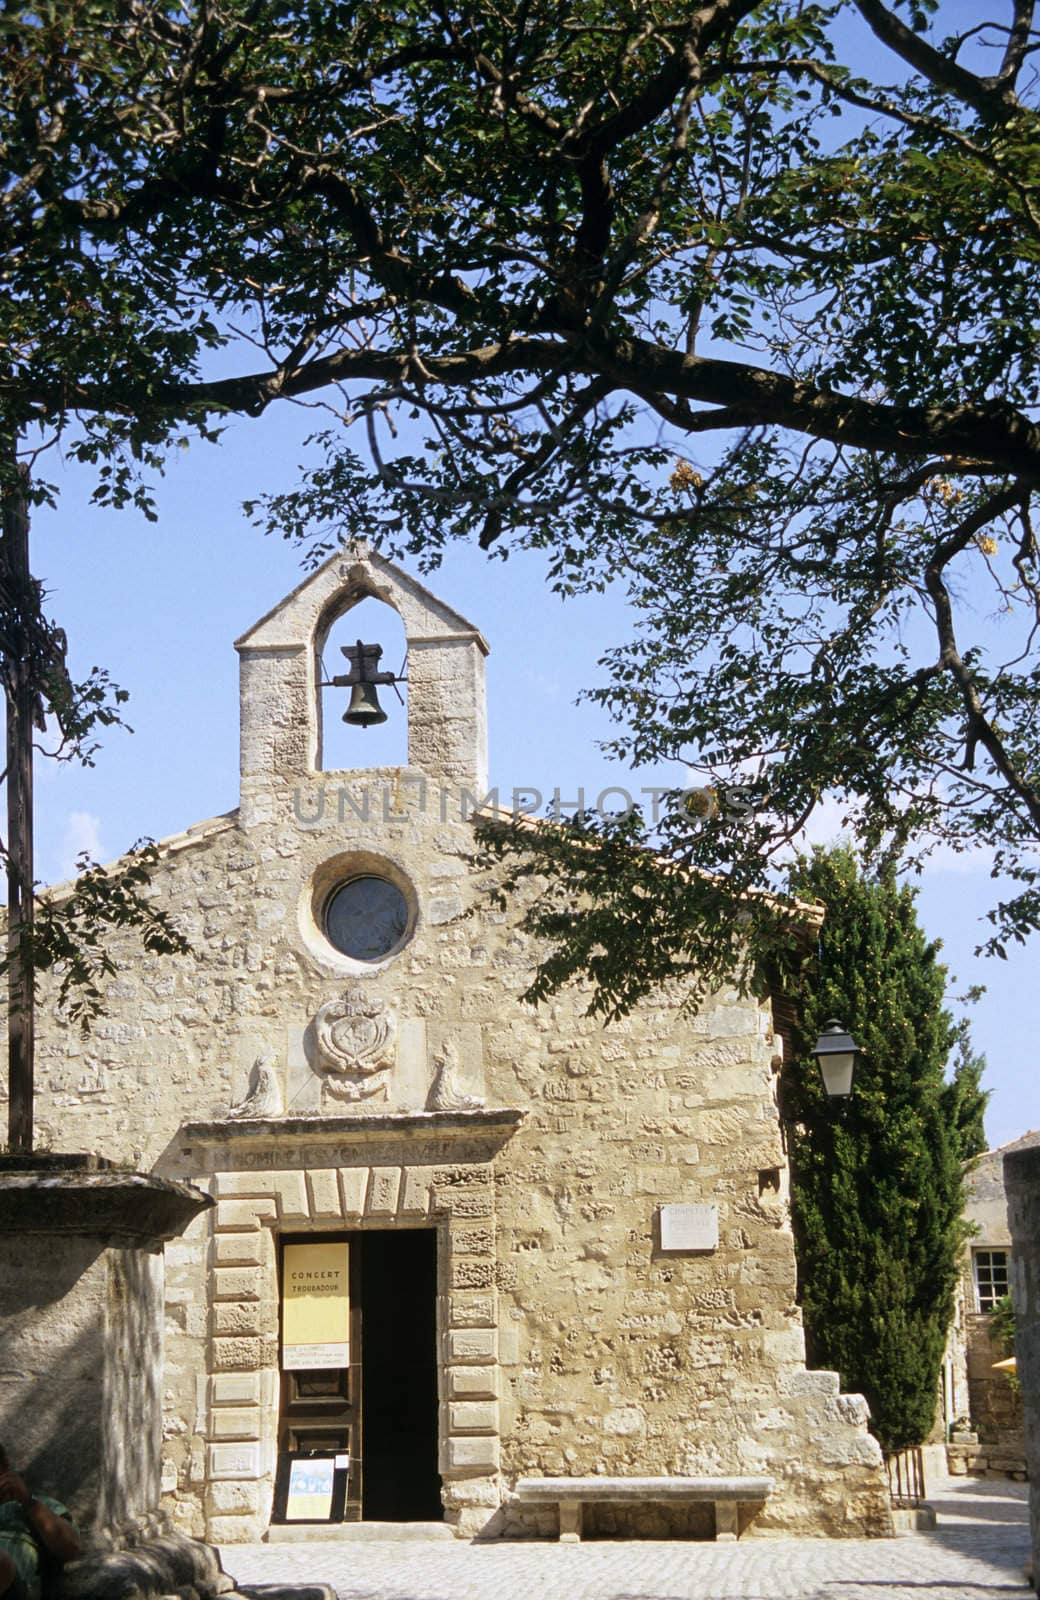 A rural chapel, Chapelle des Penitents, les Baux de Provence, France.